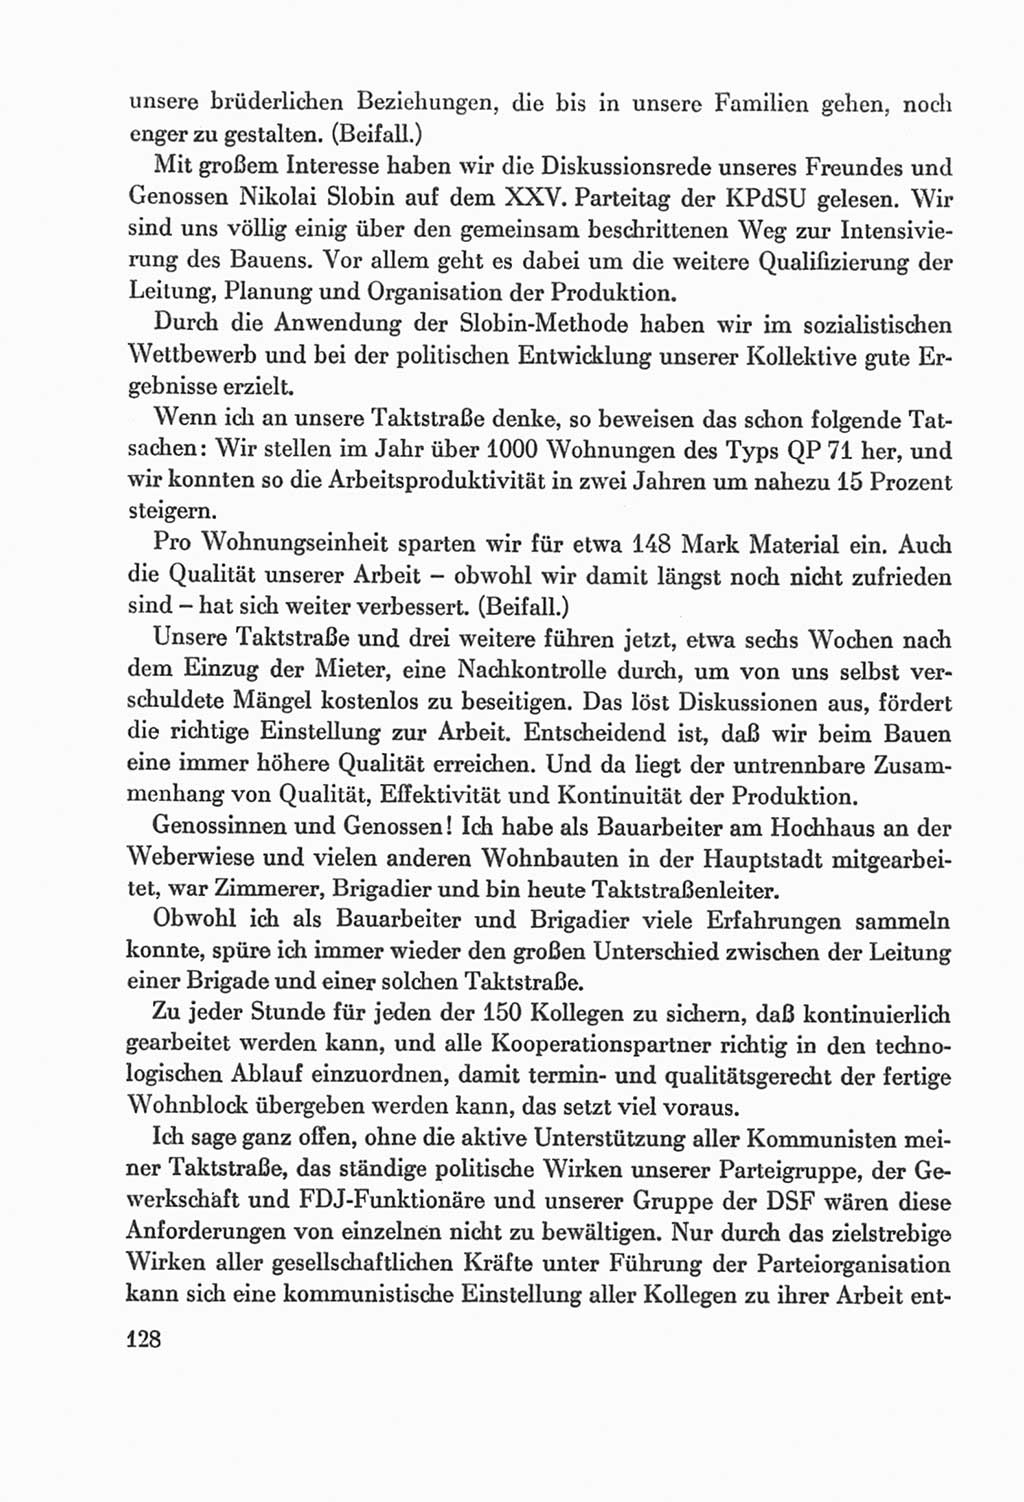 Protokoll der Verhandlungen des Ⅸ. Parteitages der Sozialistischen Einheitspartei Deutschlands (SED) [Deutsche Demokratische Republik (DDR)] 1976, Band 2, Seite 128 (Prot. Verh. Ⅸ. PT SED DDR 1976, Bd. 2, S. 128)